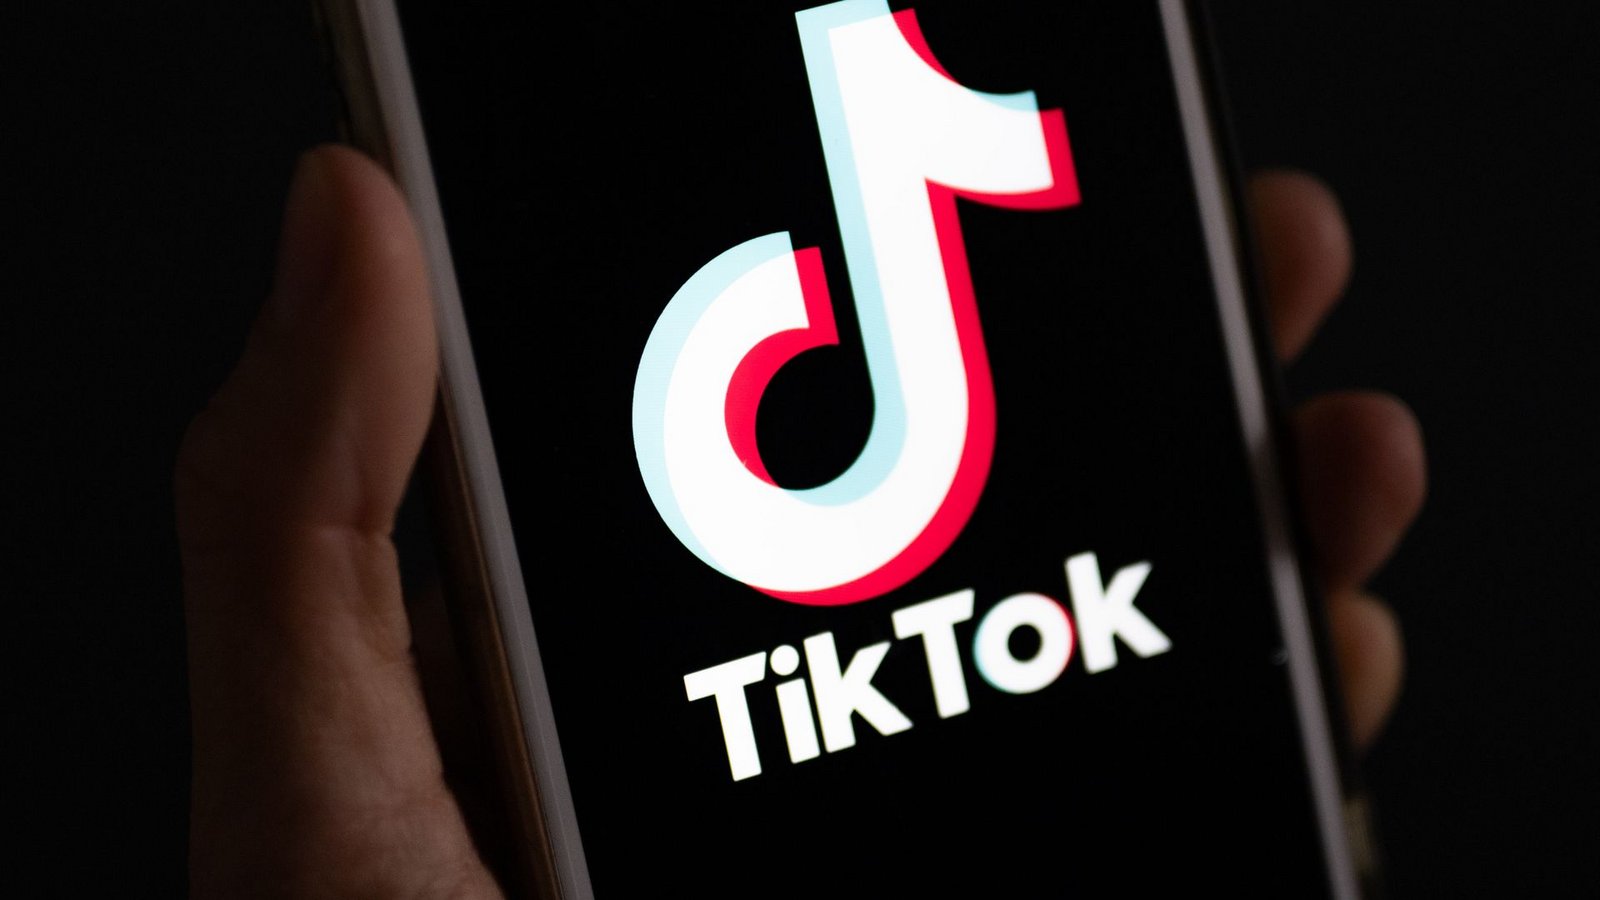 Mehr als 170 Millionen Nutzer hat Tiktok allein in den USA.Foto: Monika Skolimowska/dpa